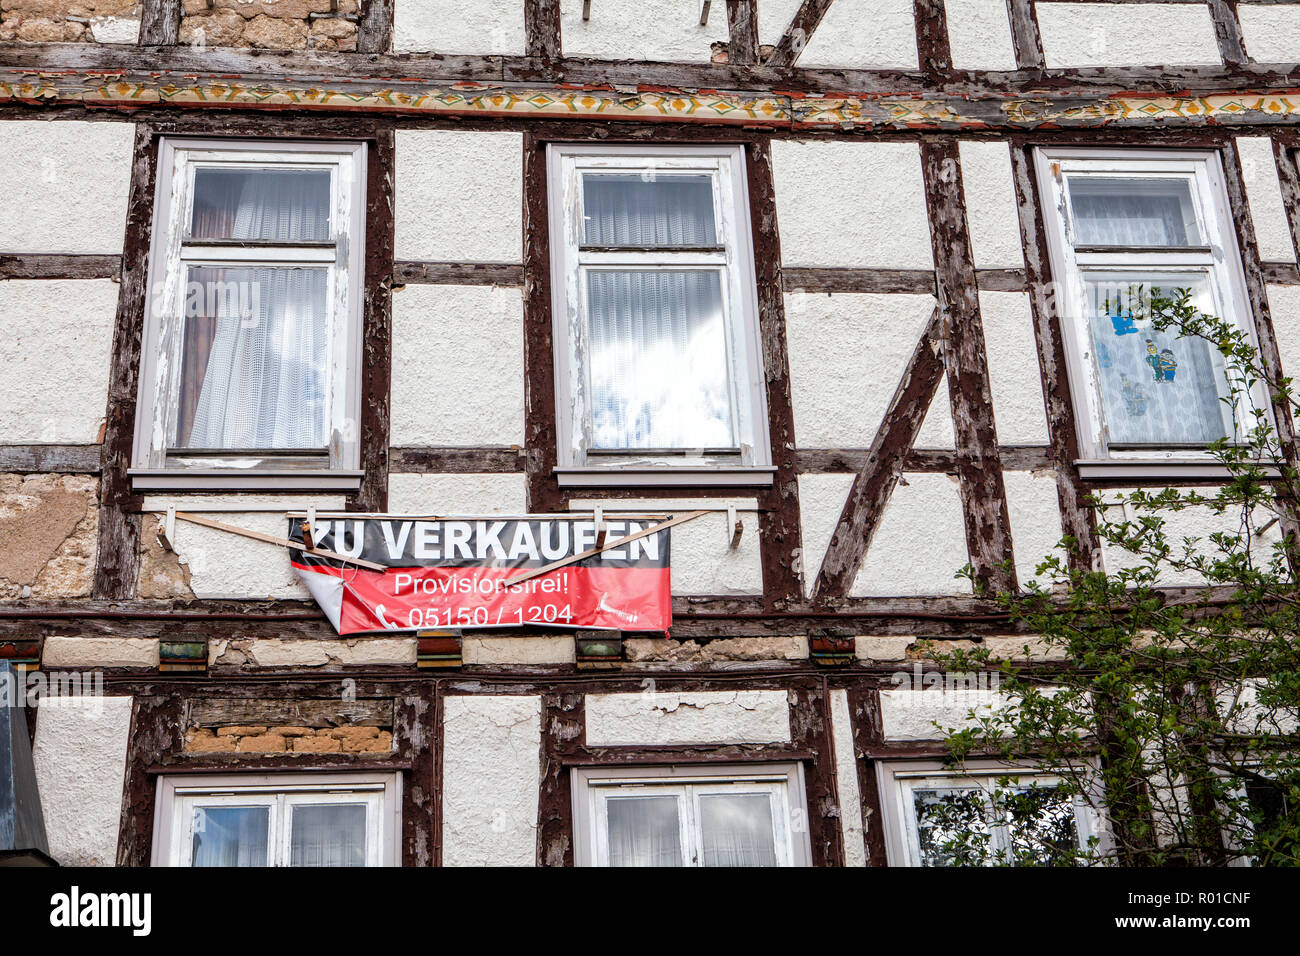 Haus für Verkauf, schlechter Zustand, Bodenwerder, Weserbergland, Niedersachsen, Deutschland, Europa Stockfoto